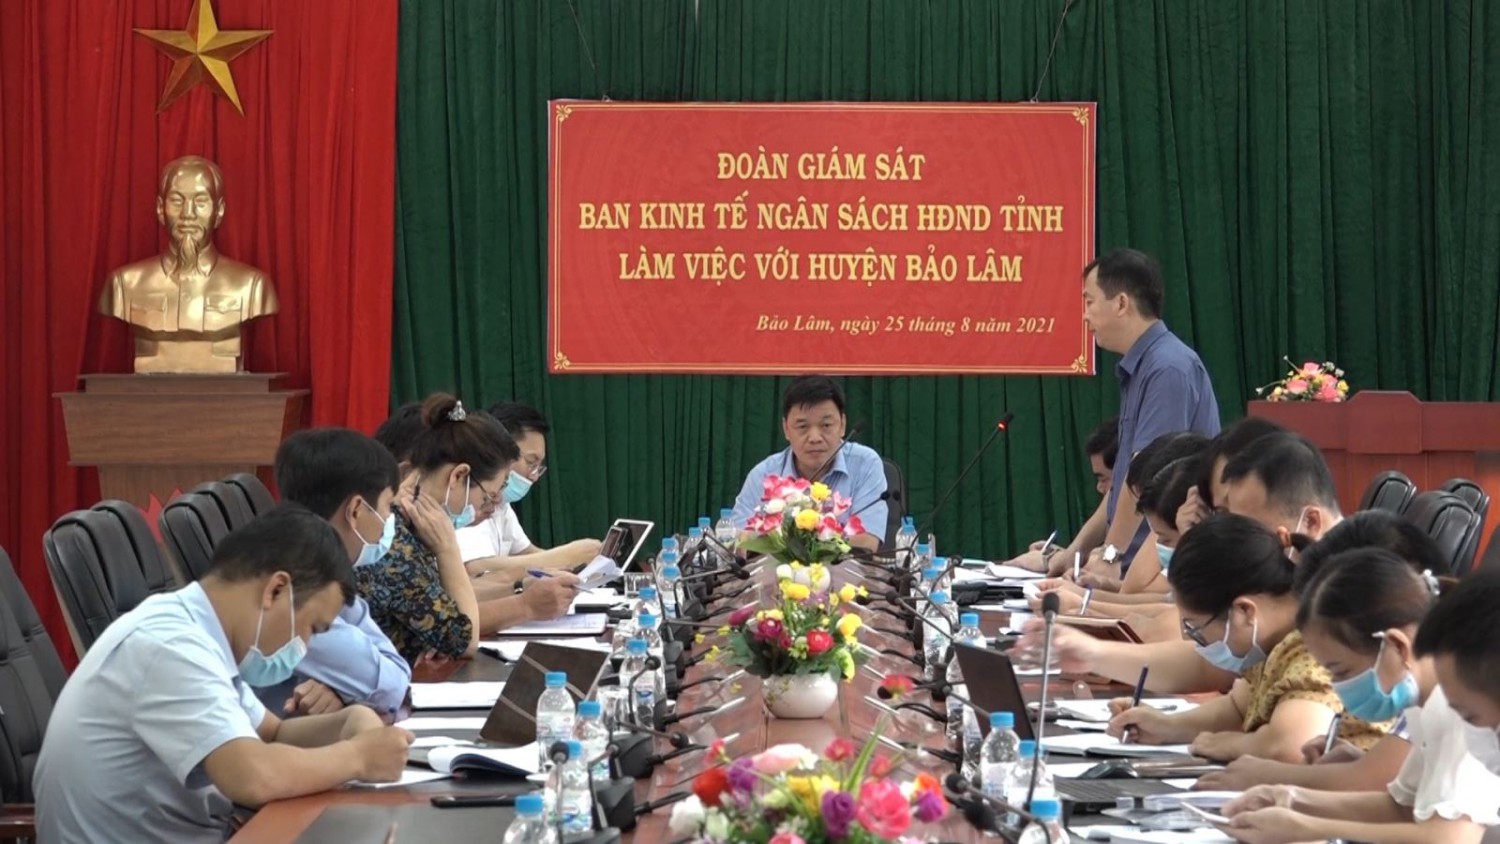 Đoàn giám sát của Ban Kinh tế - Ngân sách HĐND tỉnh làm việc tại huyện Bảo Lâm.